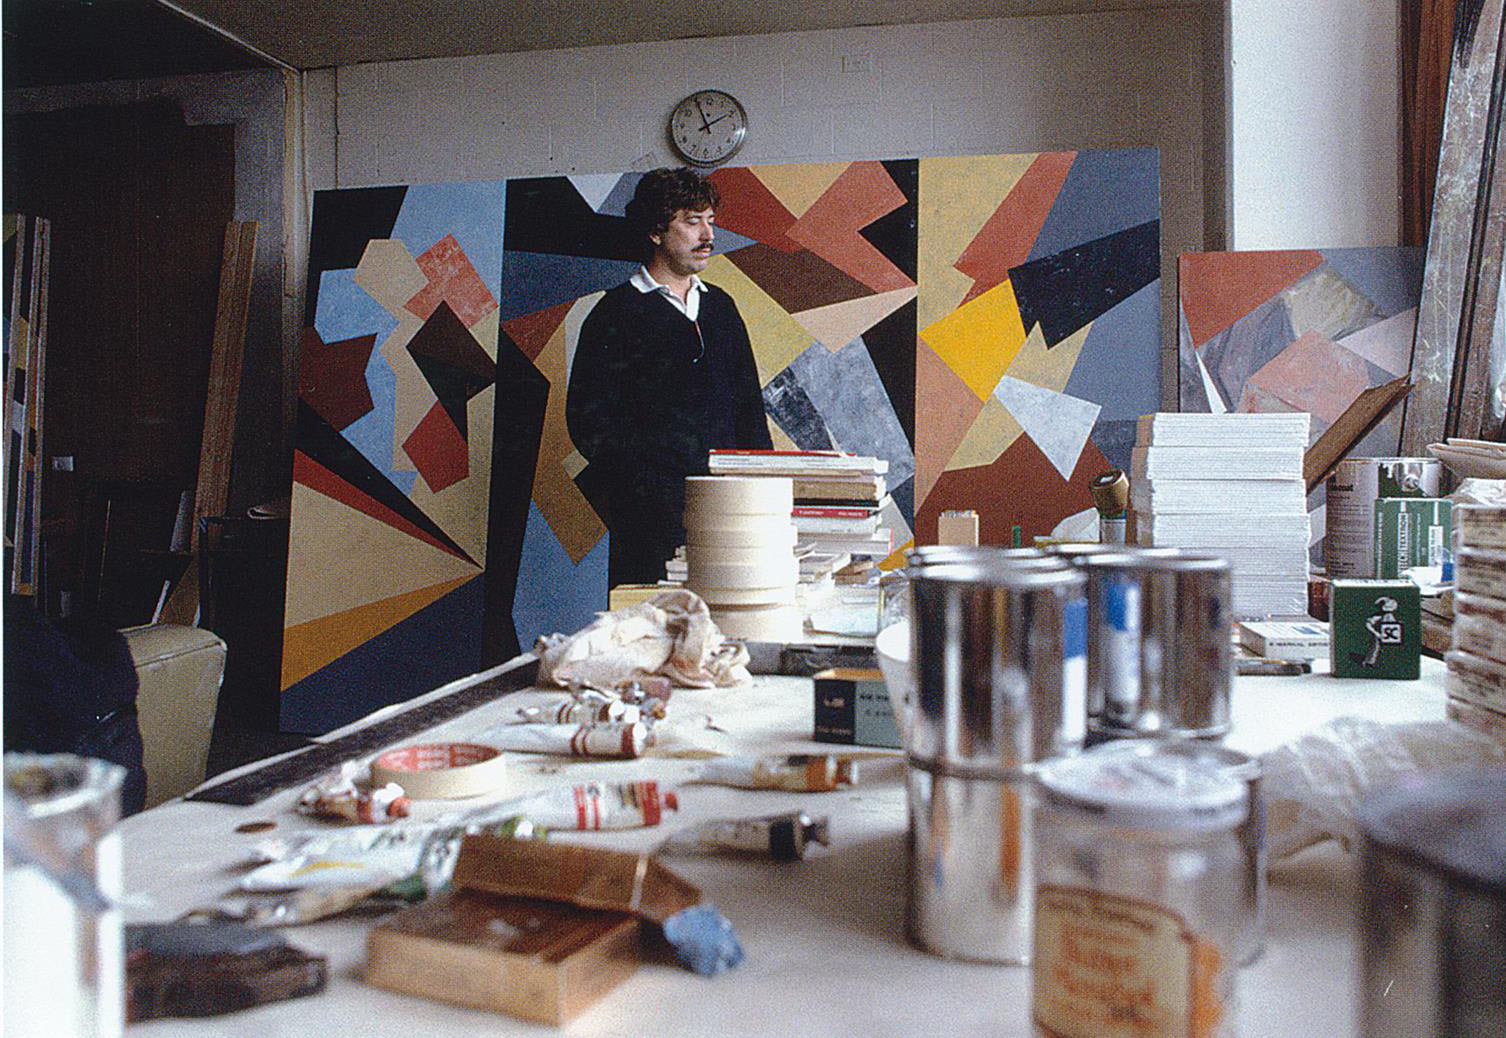 Robert Jacks in his studio, 1983